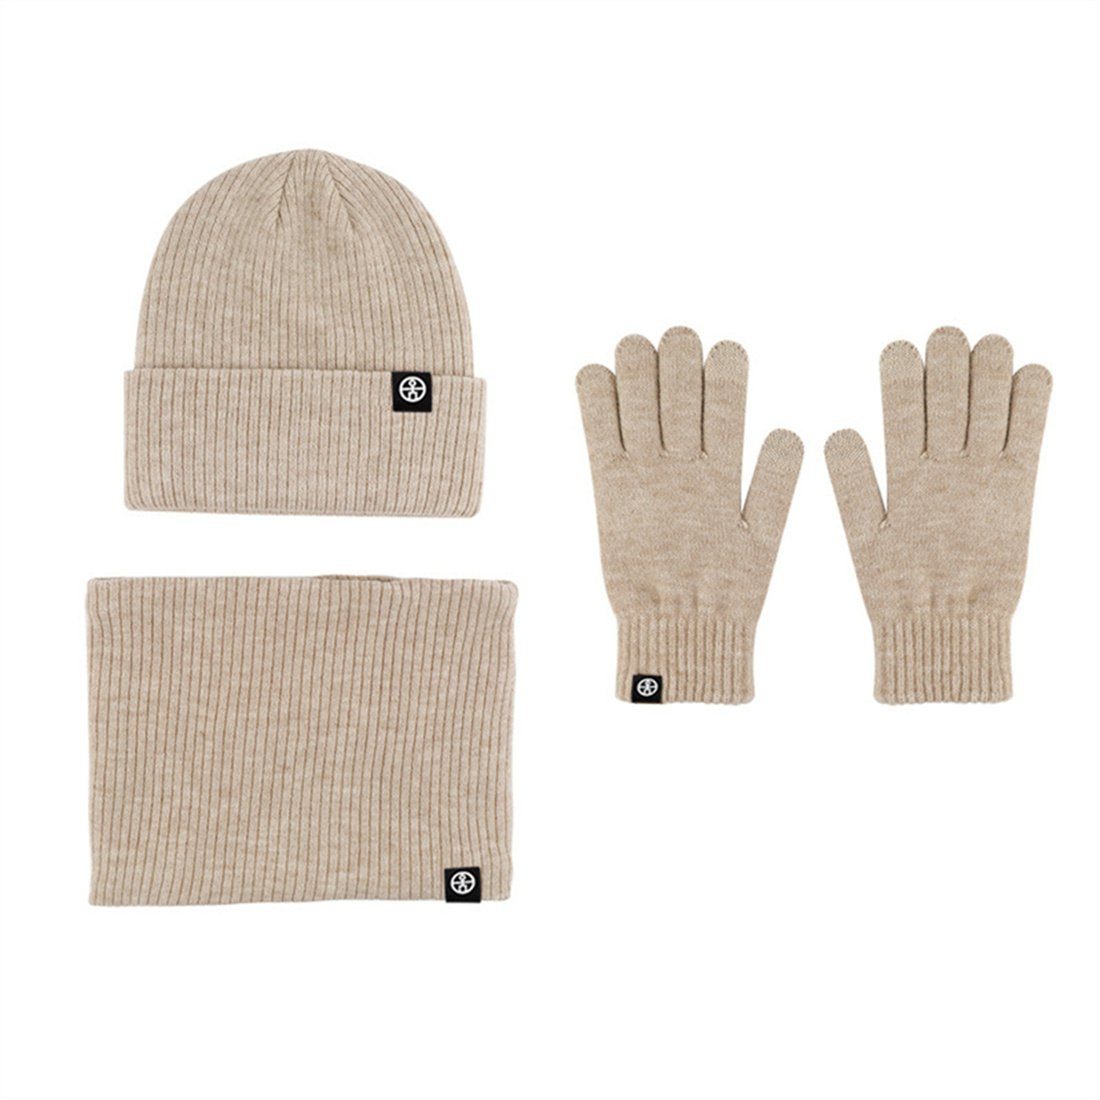 3 Winter Strickmütze Unisex + Piece Set, Strickmütze khaki Warmth Handschuhe + DÖRÖY Schal